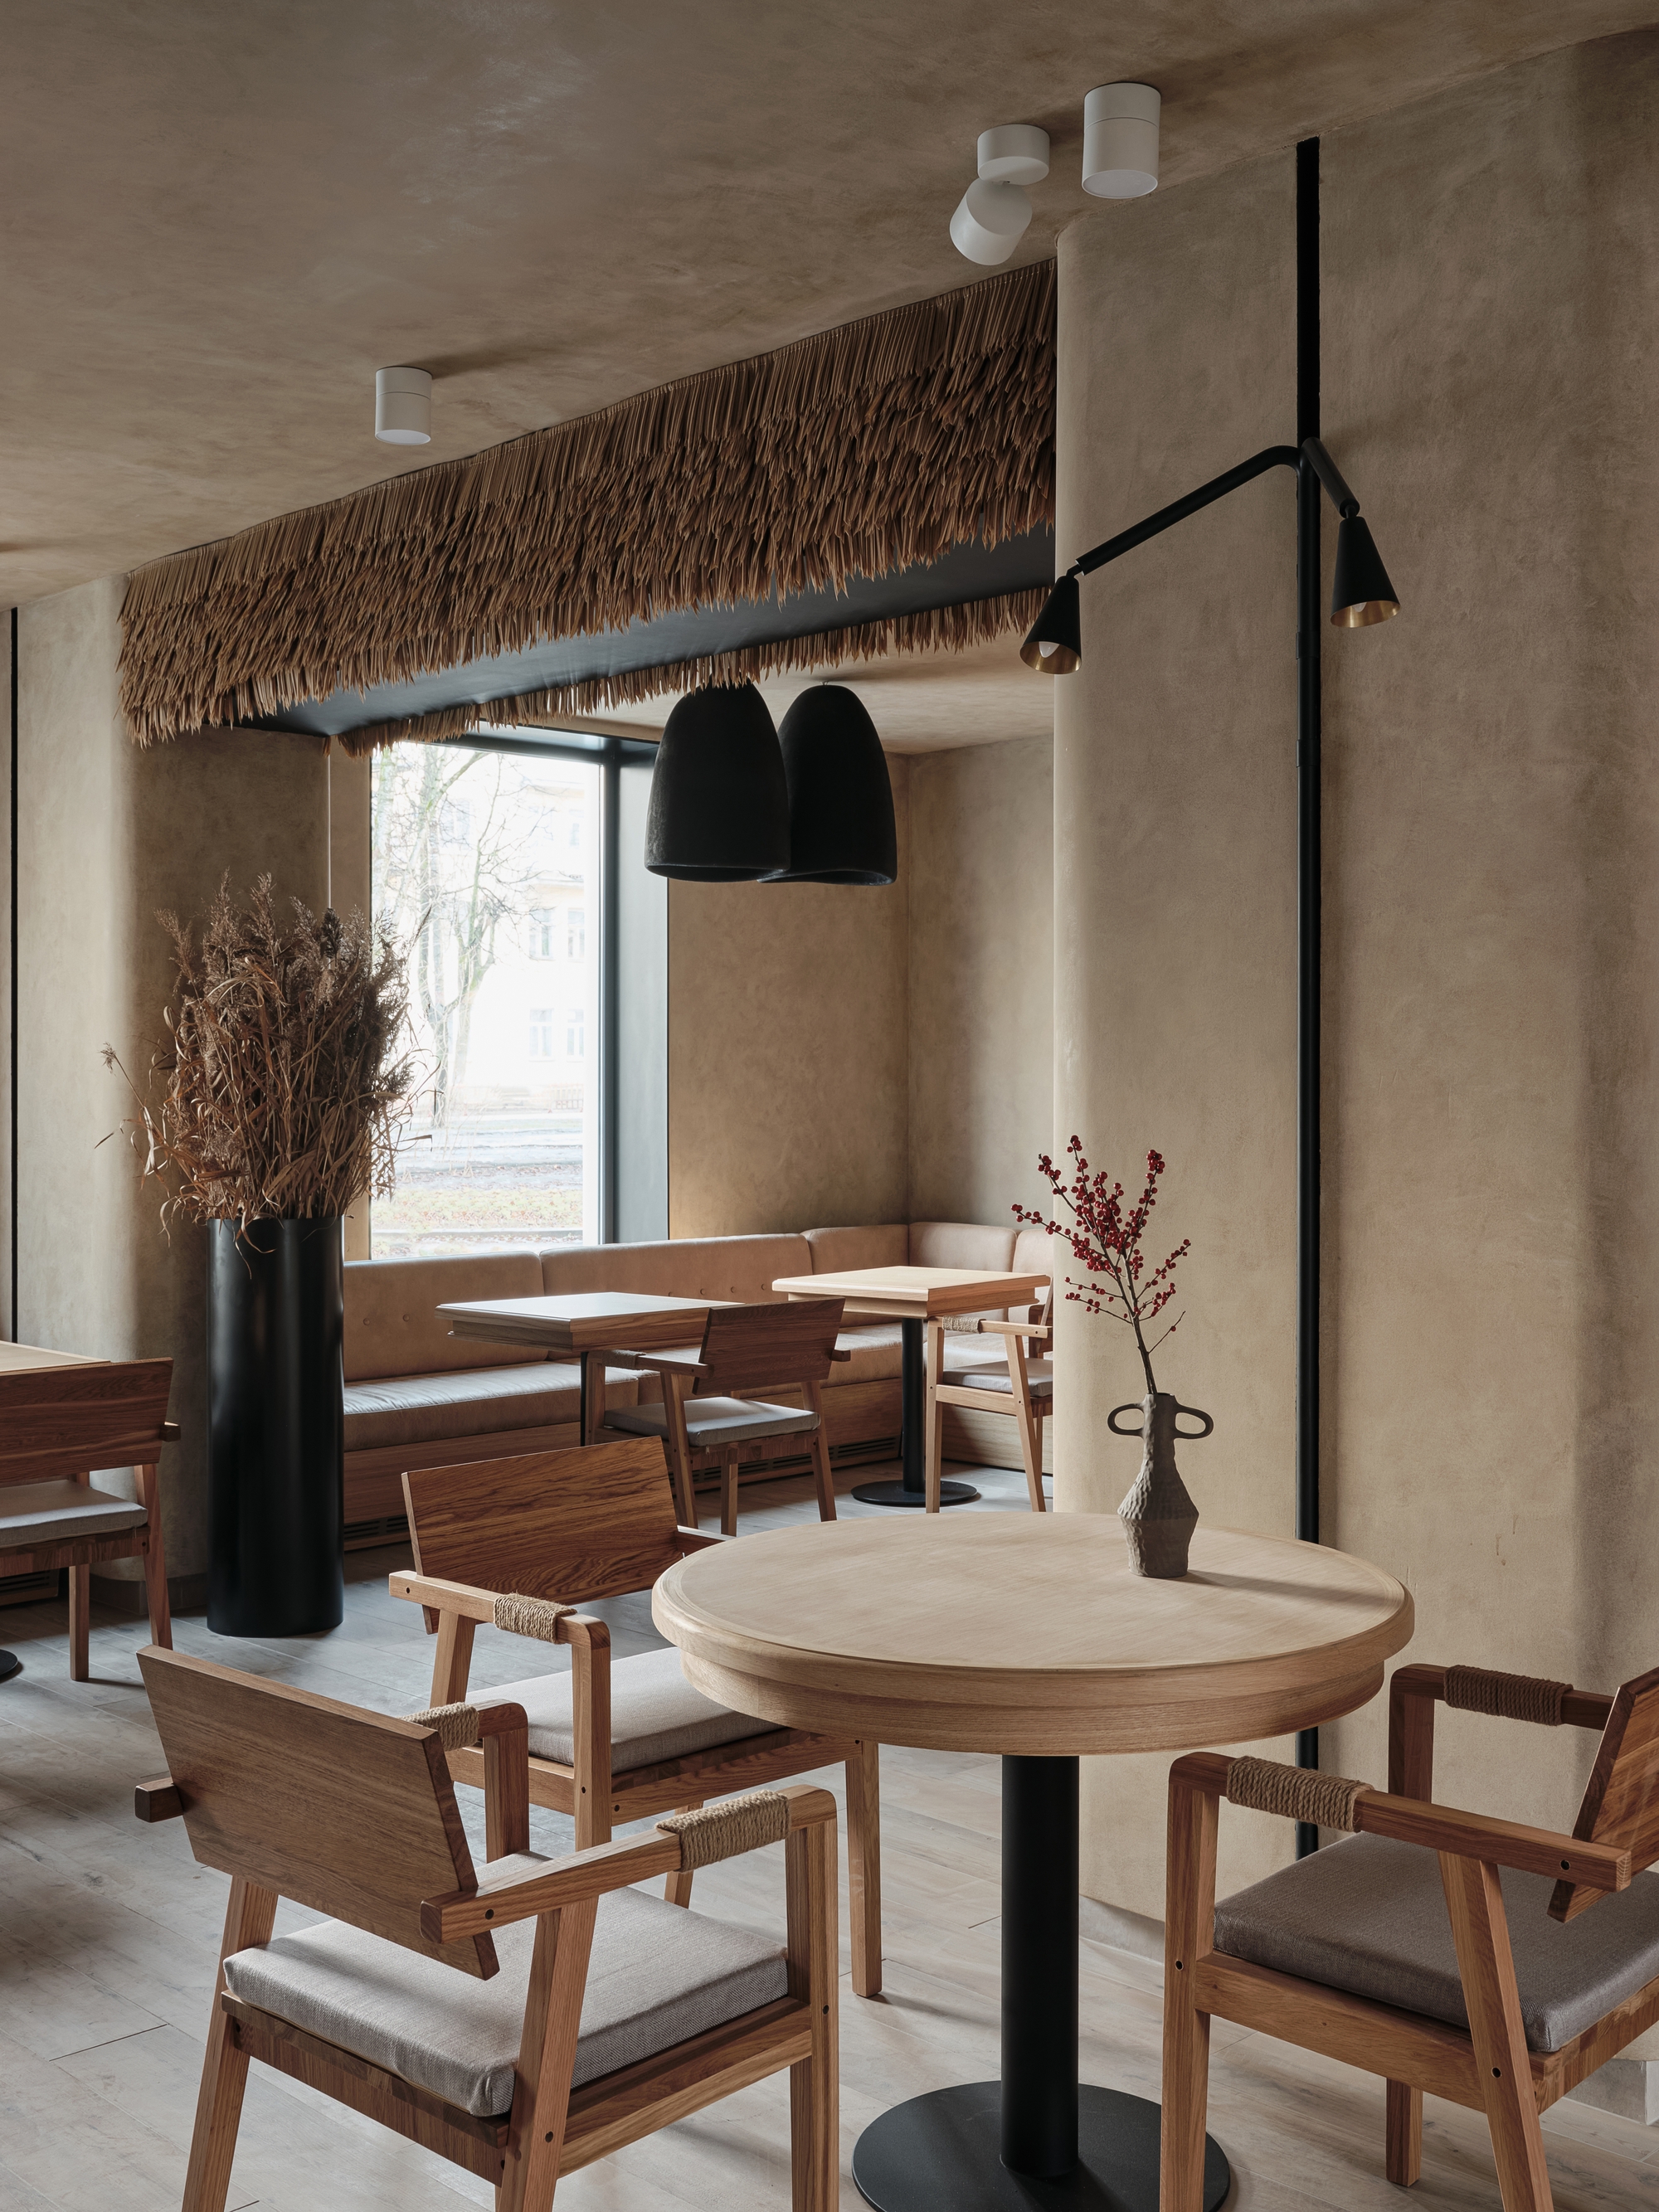 图片[3]|Fazenda餐厅|ART-Arrakis | 建筑室内设计的创新与灵感